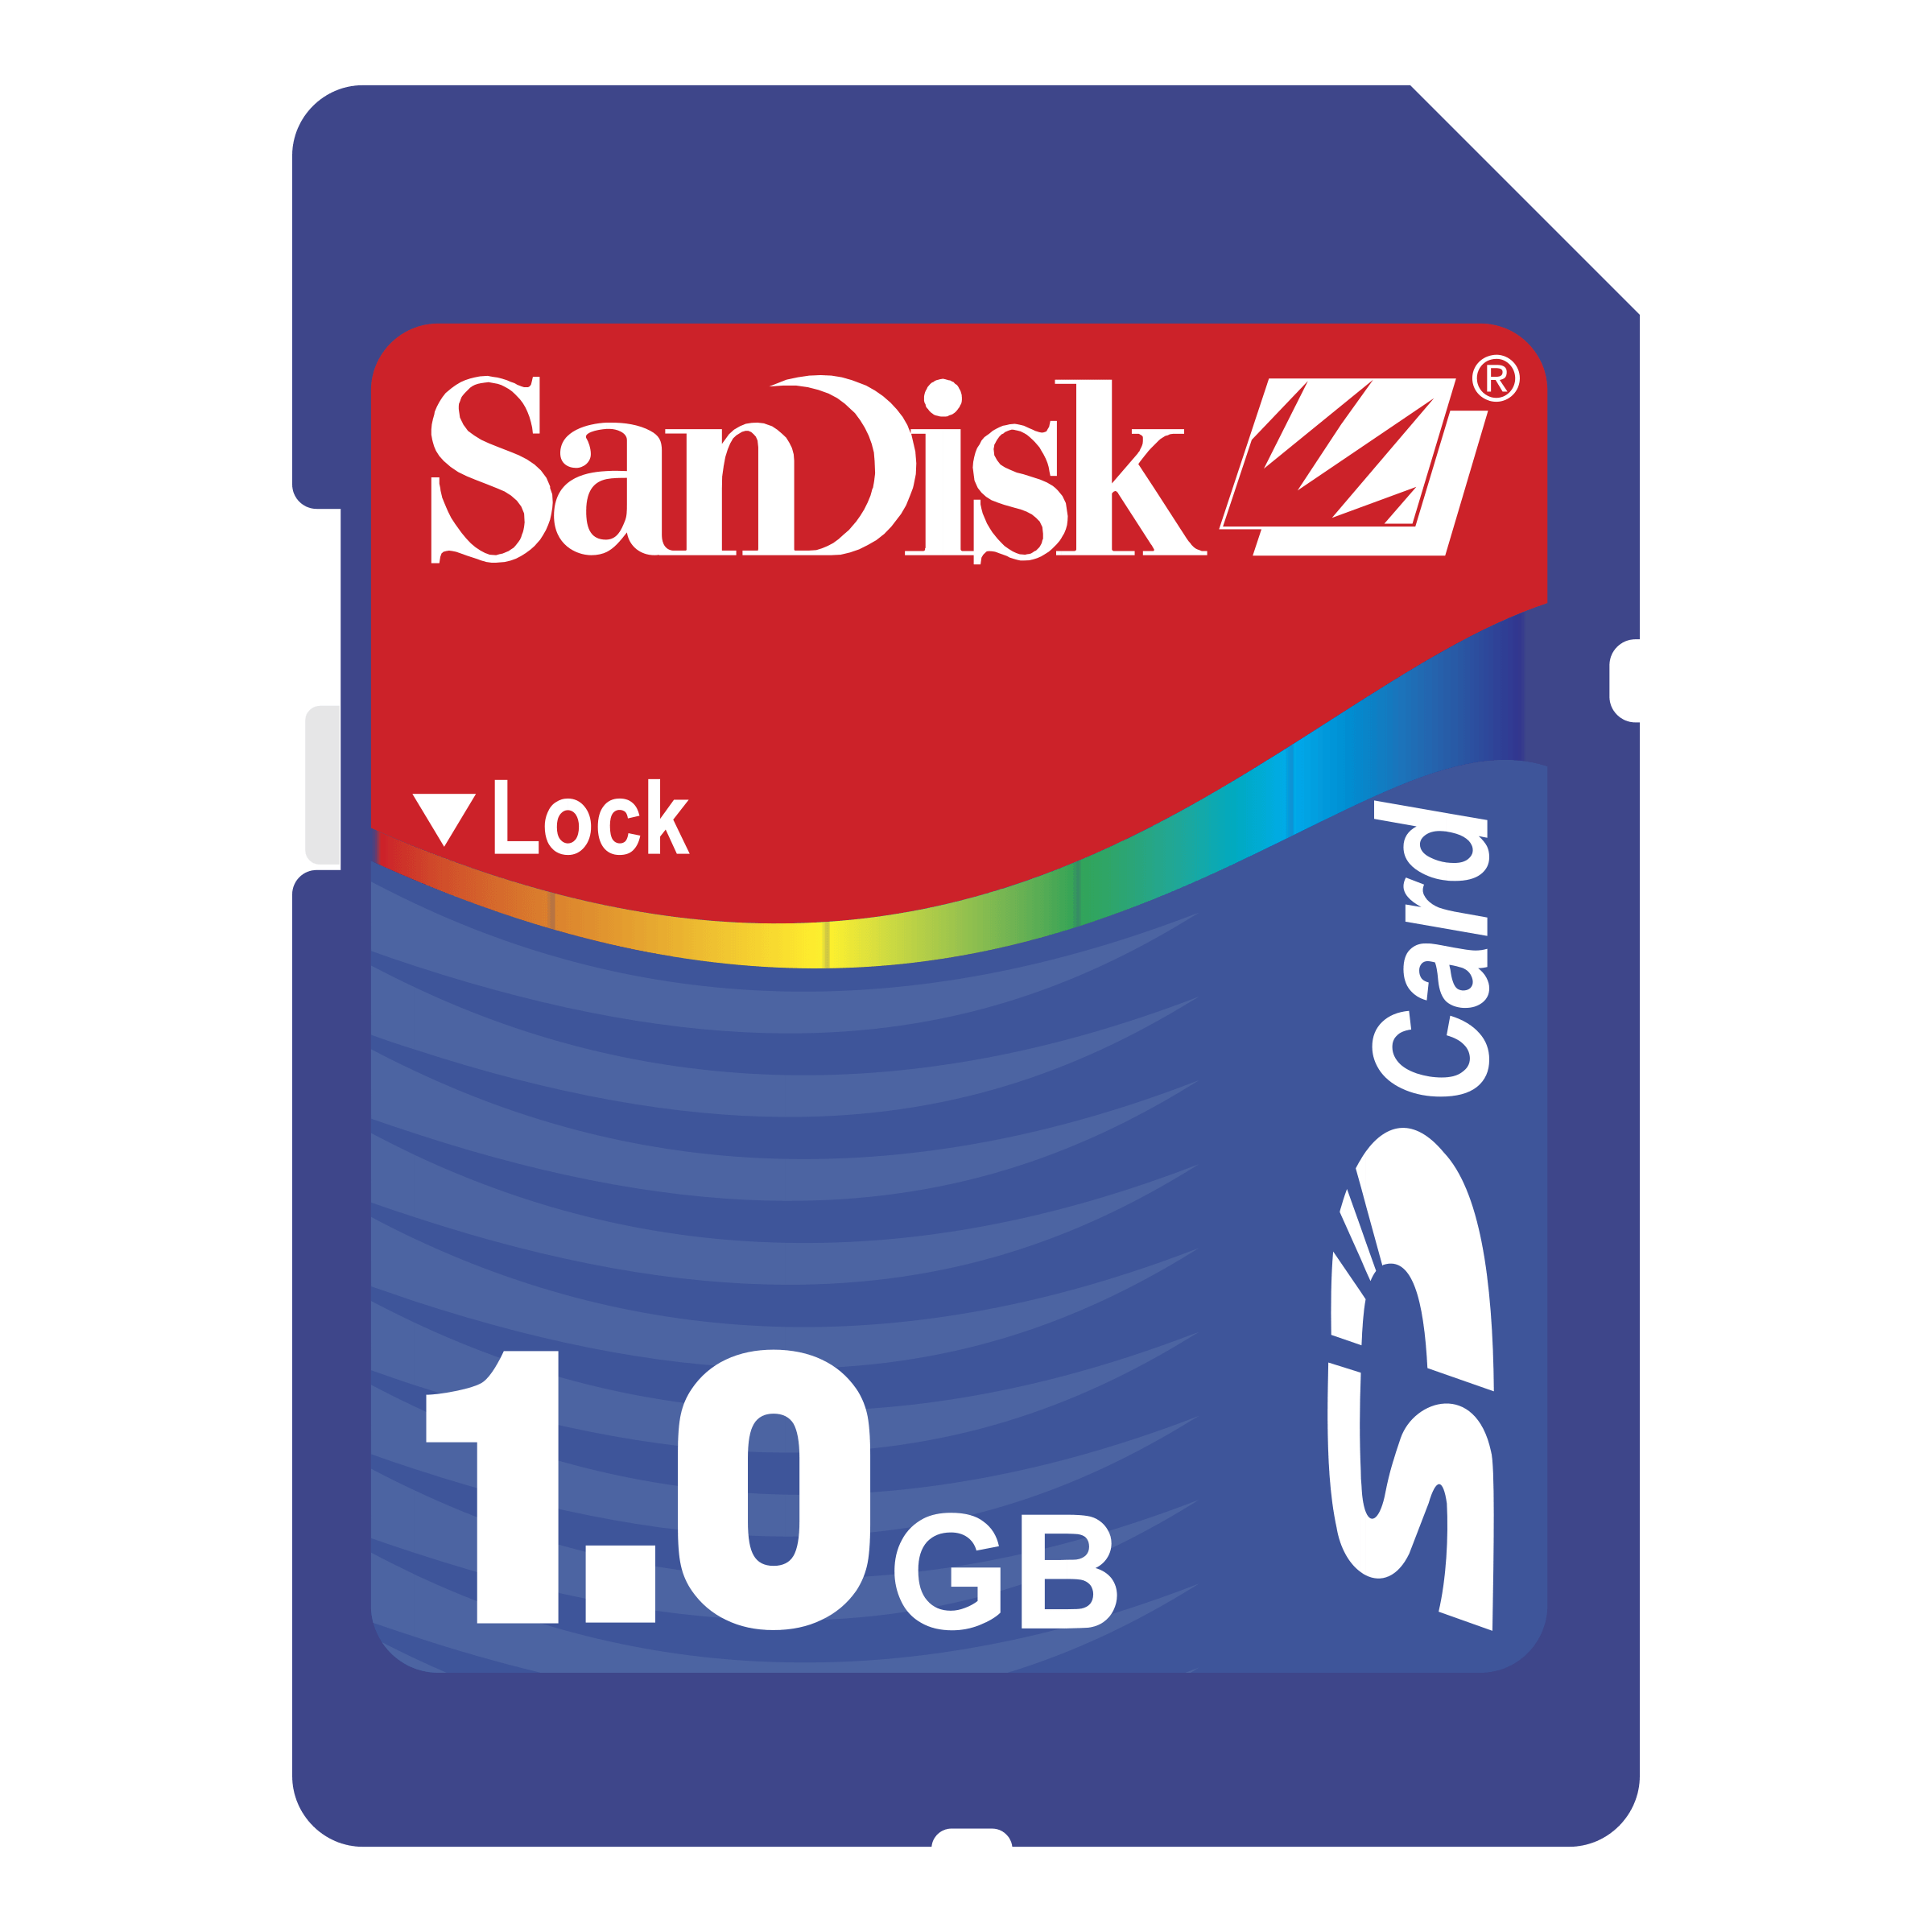 Scandisk Logo - Sandisk Logo PNG Transparent & SVG Vector - Freebie Supply